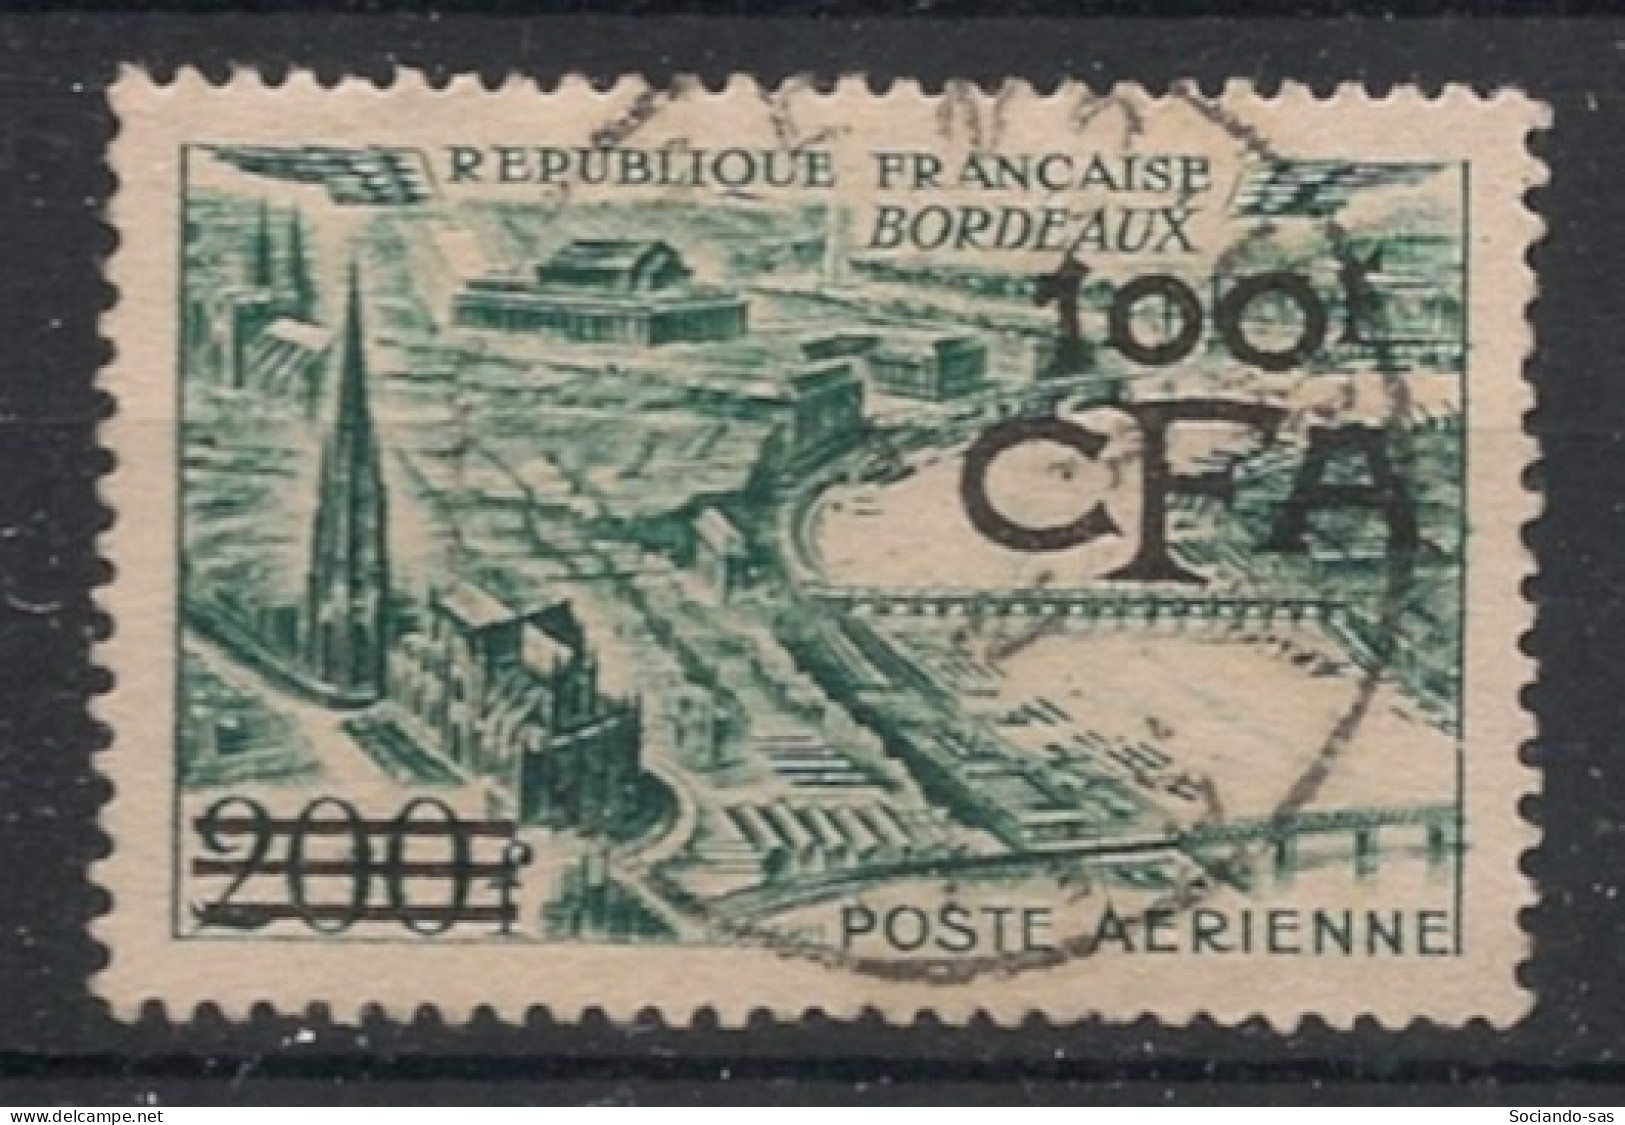 REUNION - 1951 - Poste Aérienne PA N°YT. 49 - Bordeaux 100f Sur 200f - Oblitéré / Used - Airmail